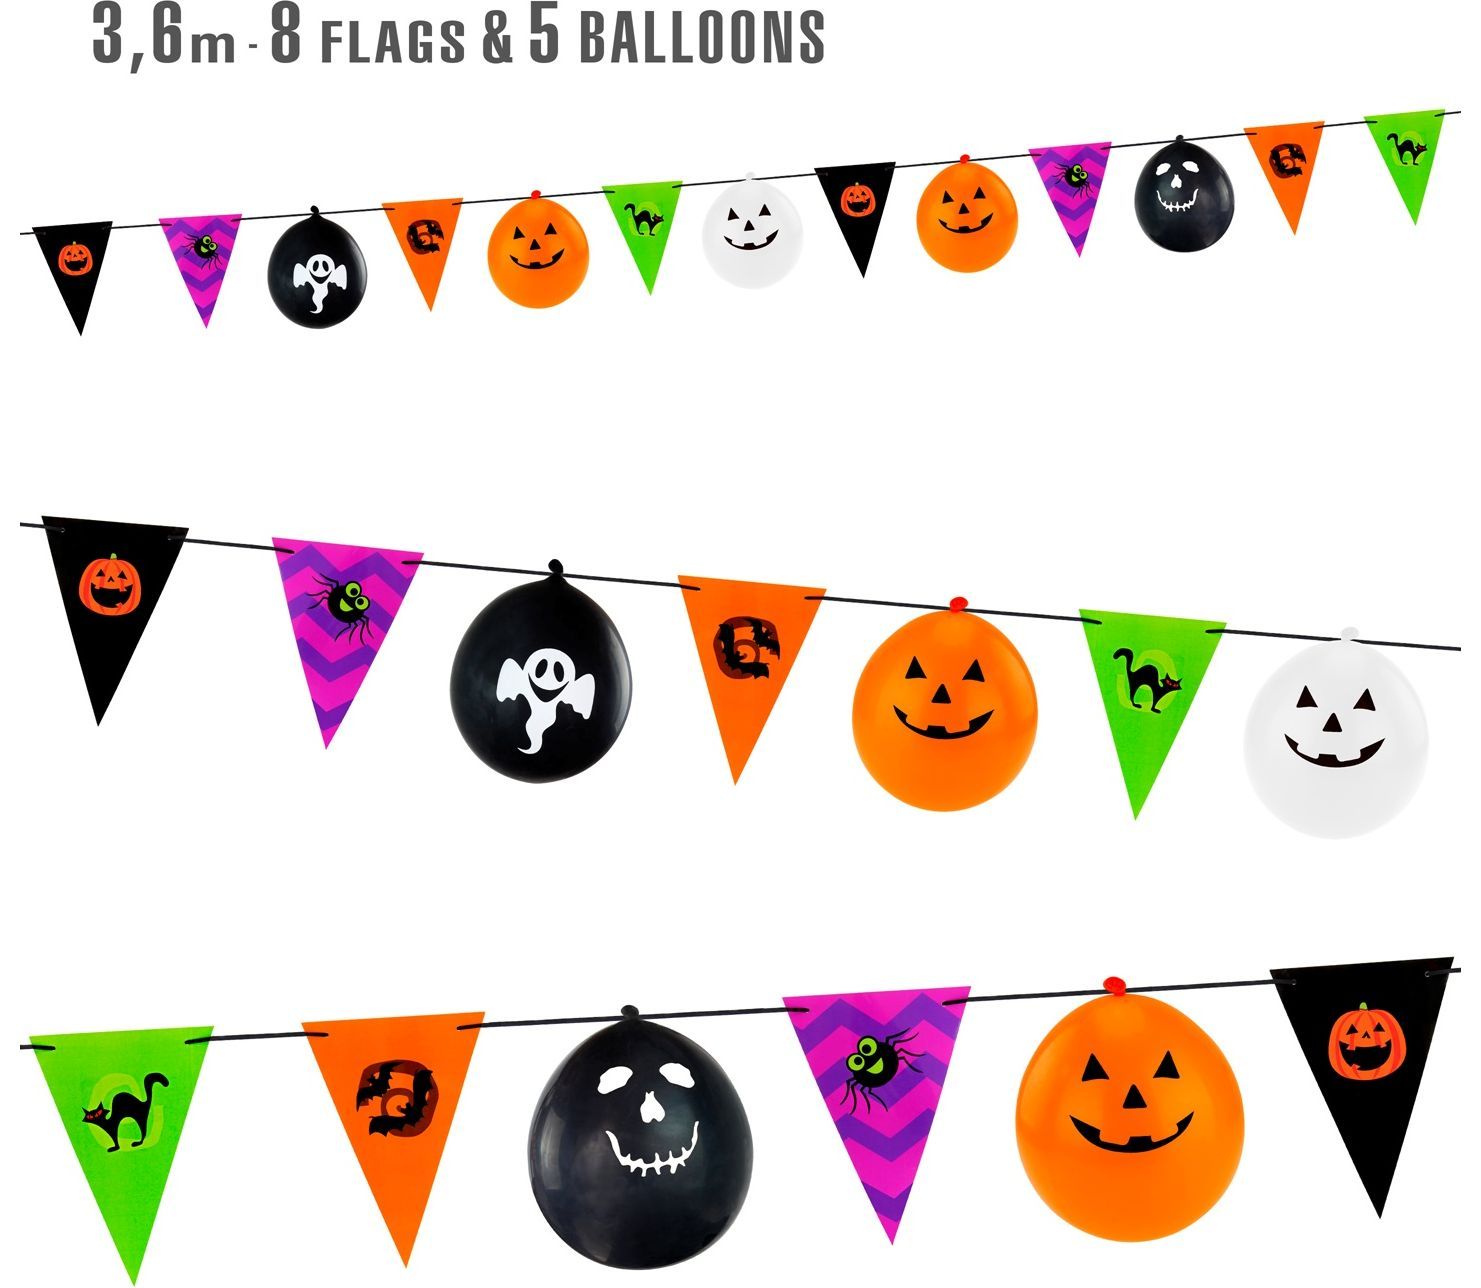 Halloween kleurrijke vlaggenlijn met ballonnen